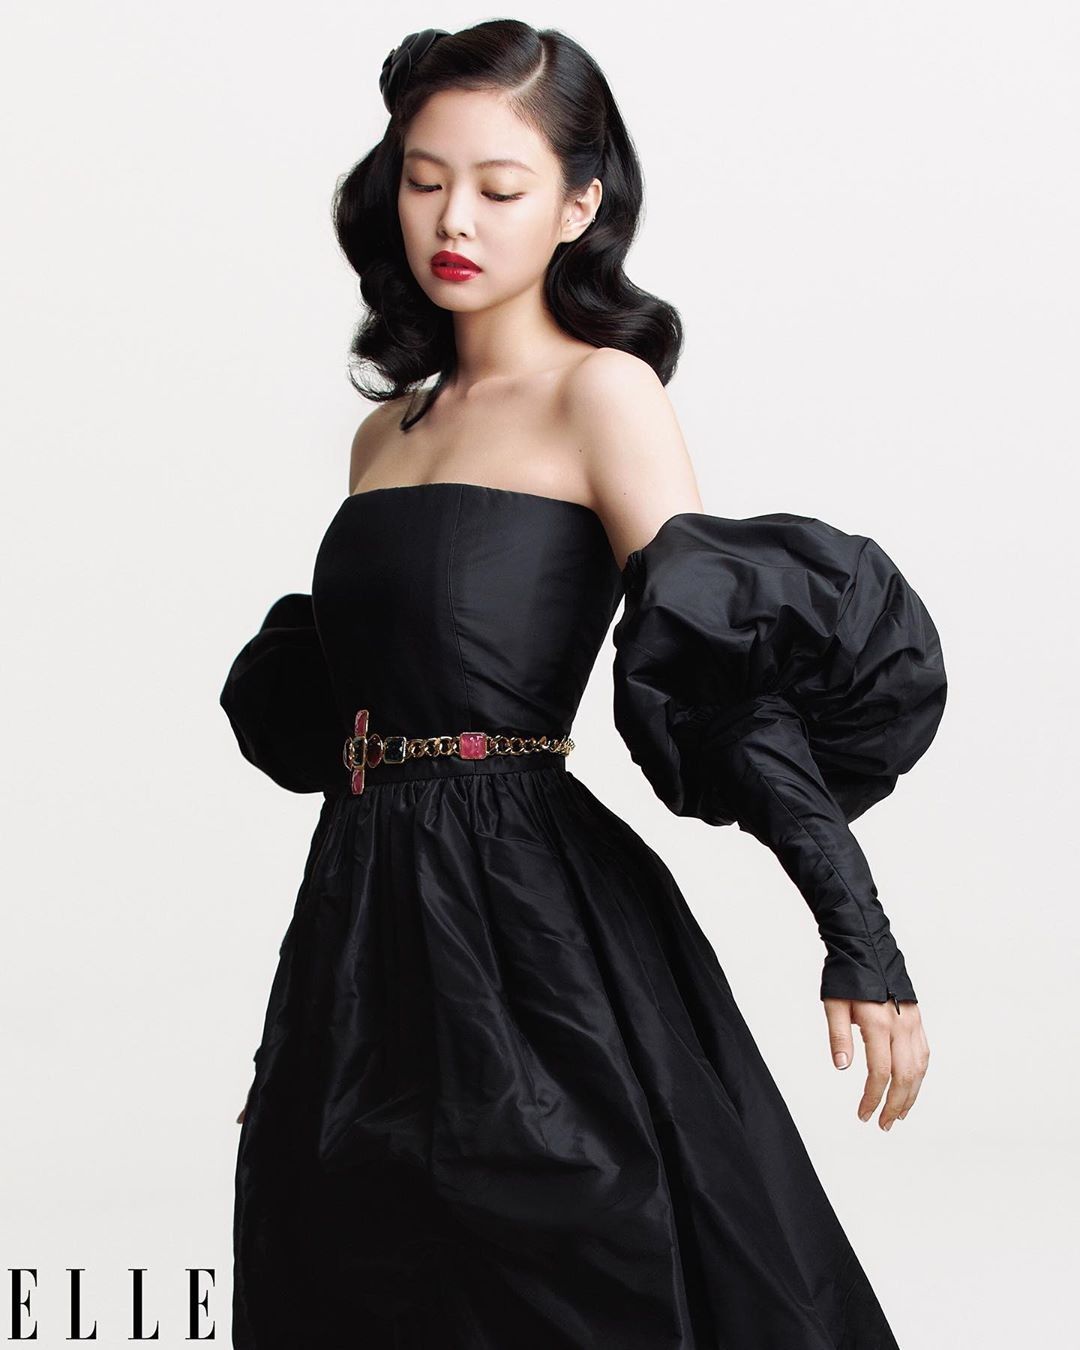 ชุดหรู ชุดออกงาน Jennie Kim wearing Chanel, Elle 2020